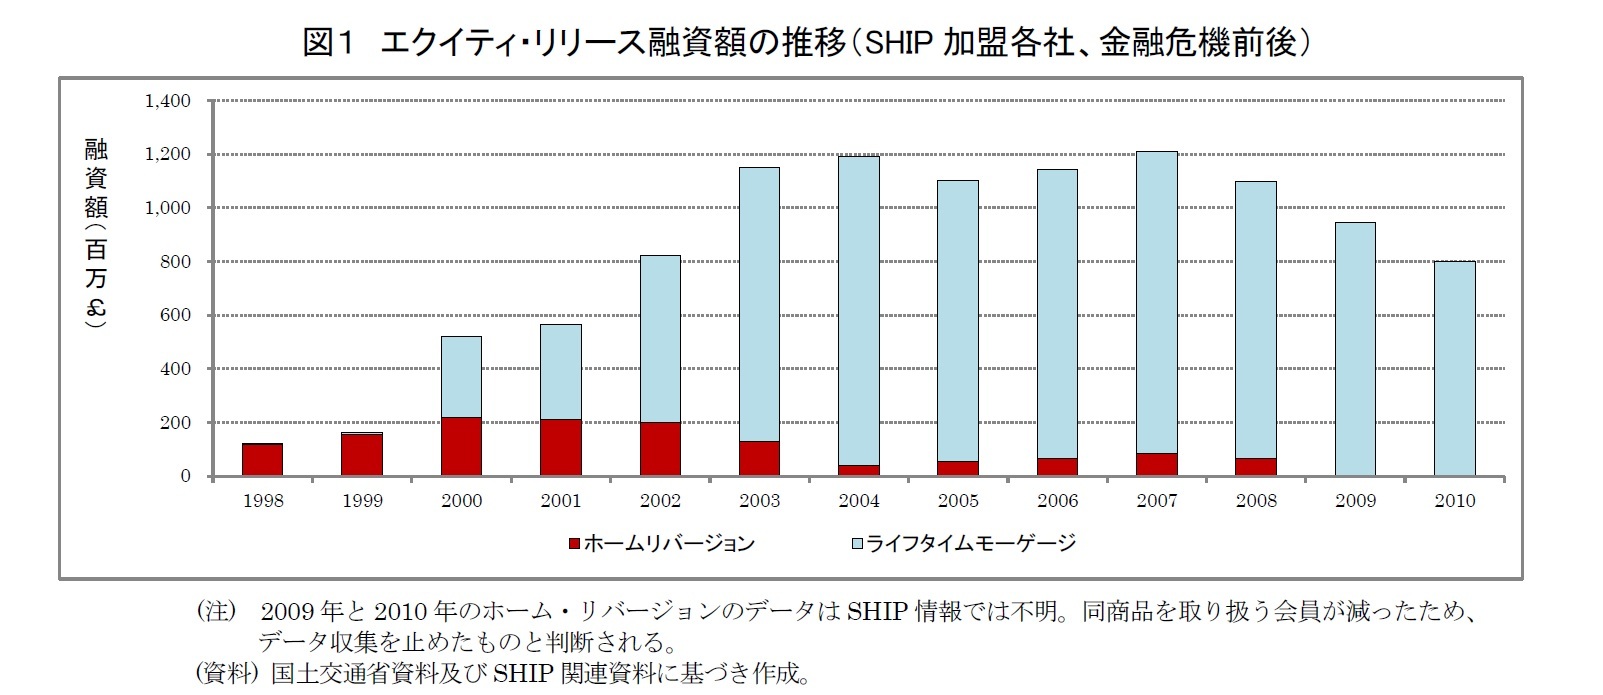 図１　エクイティ・リリース融資額の推移（SHIP加盟各社、金融危機前後）